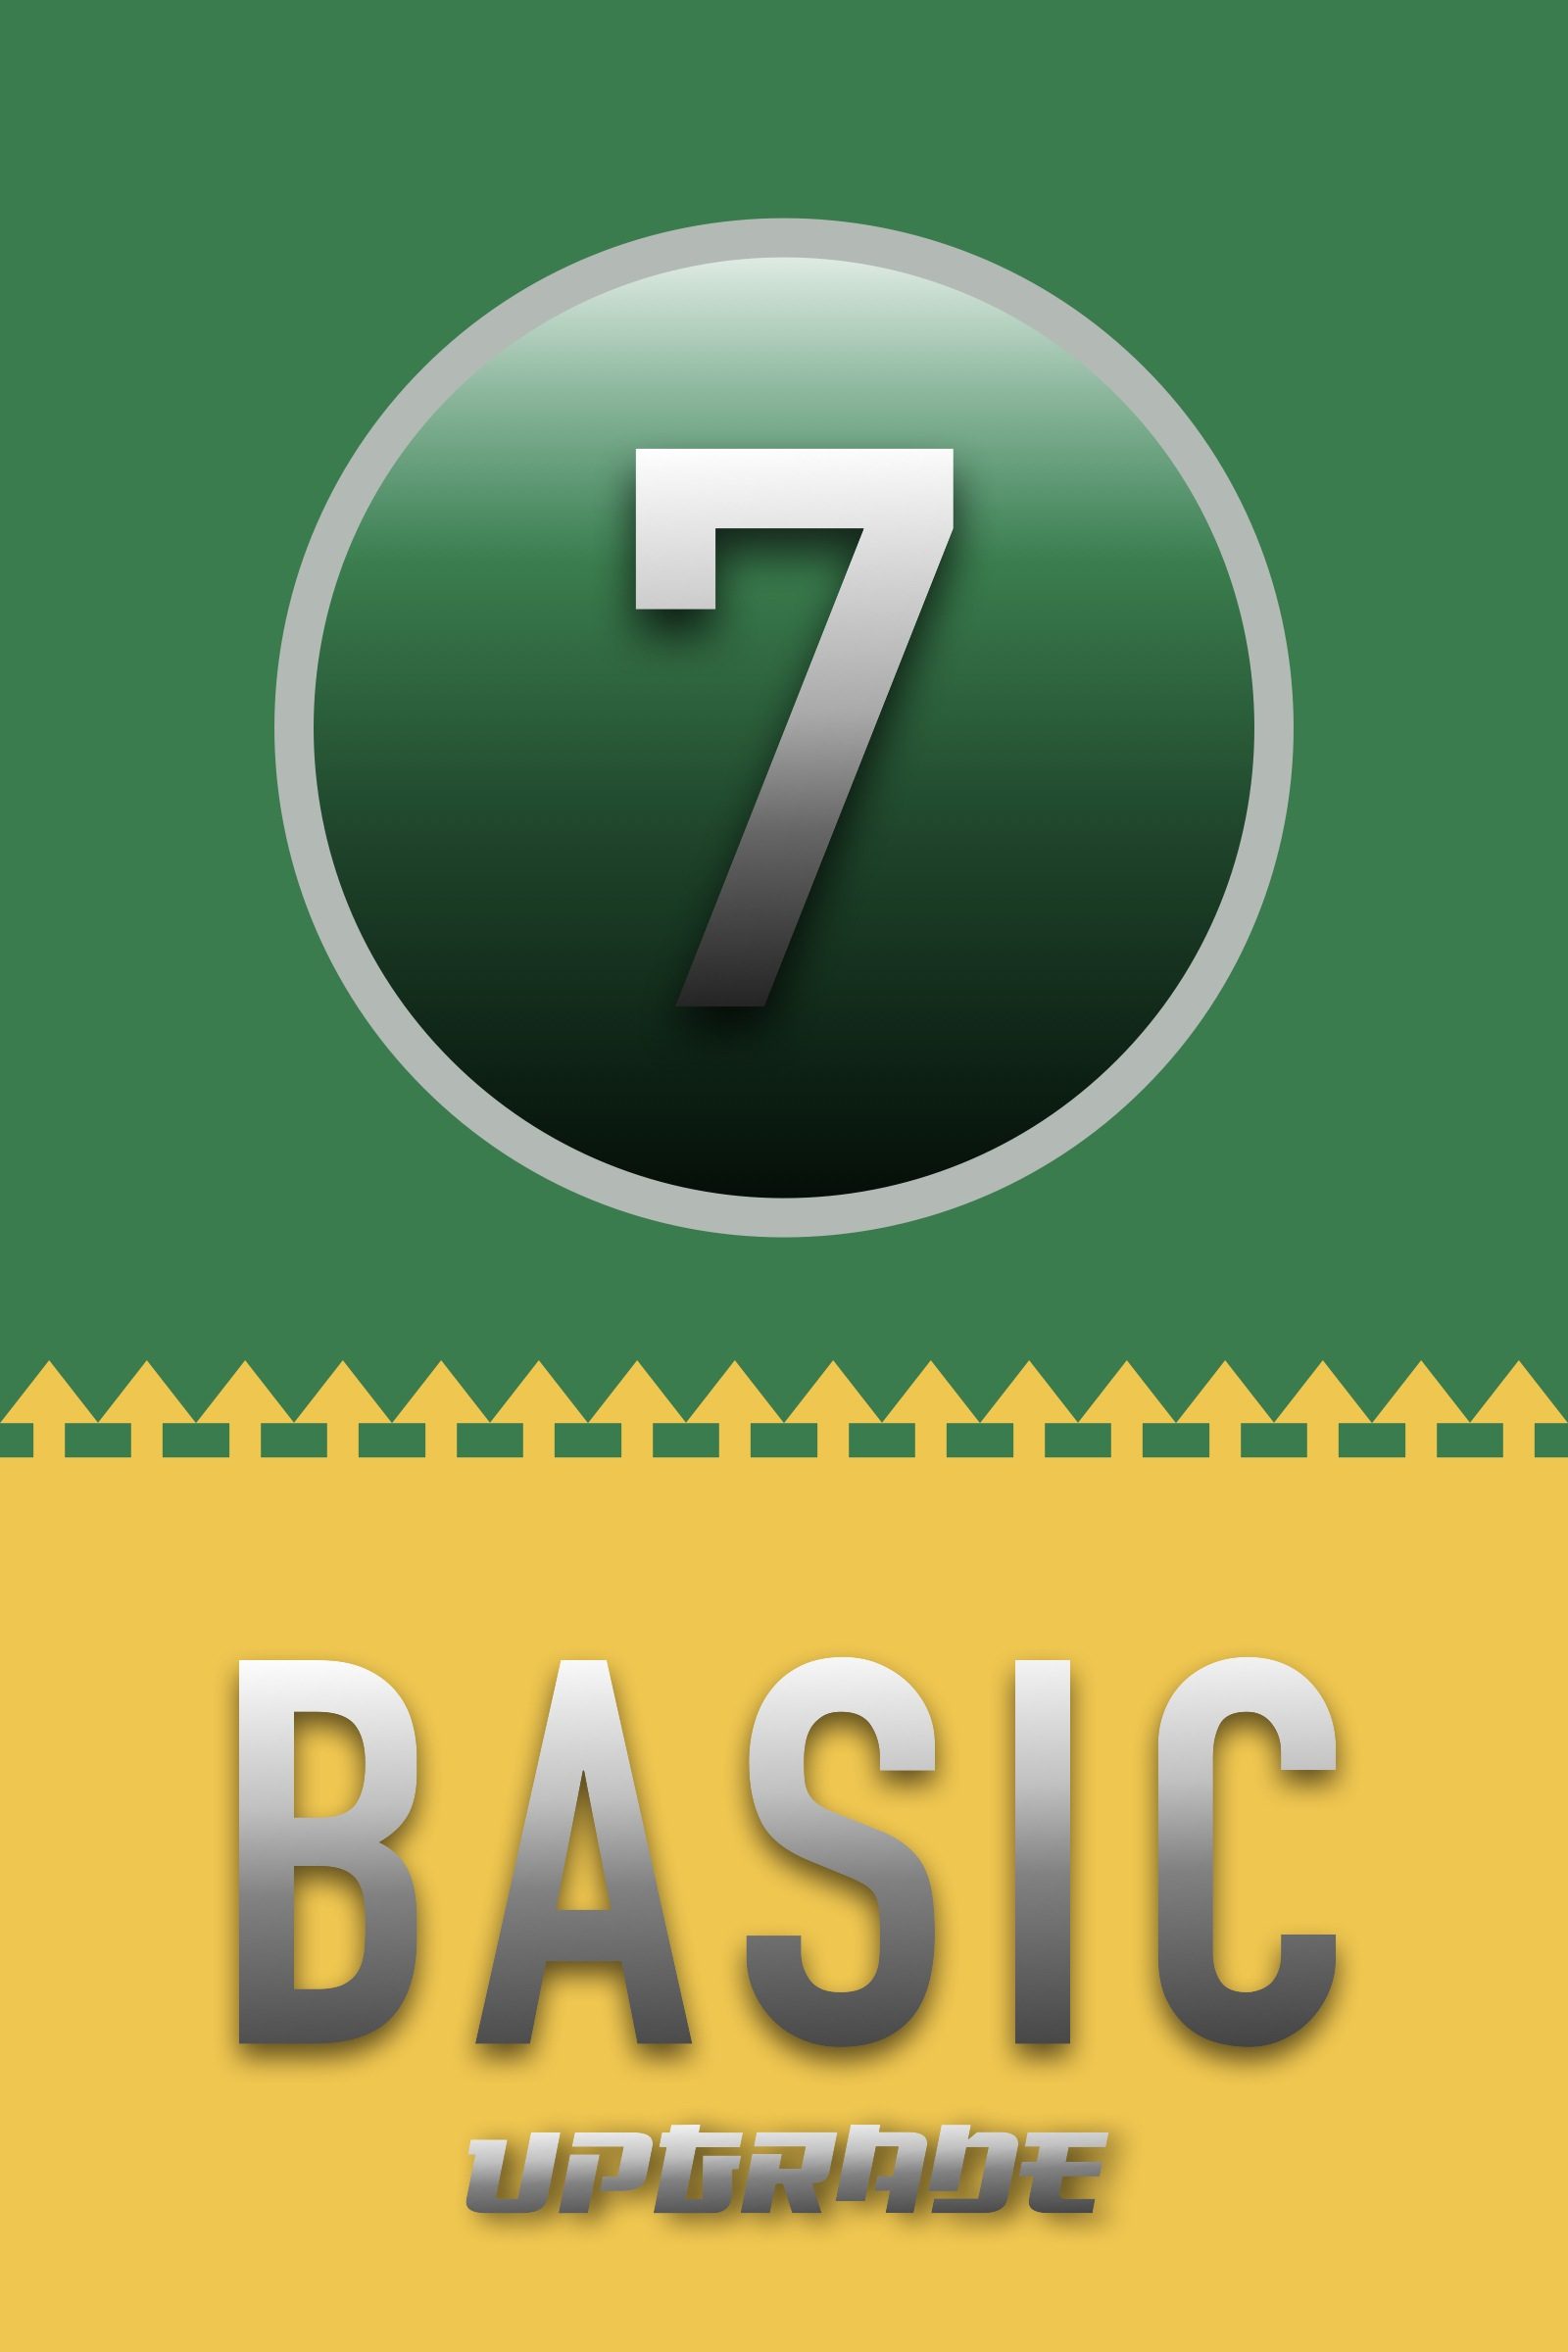 basic4-to-value7.jpeg